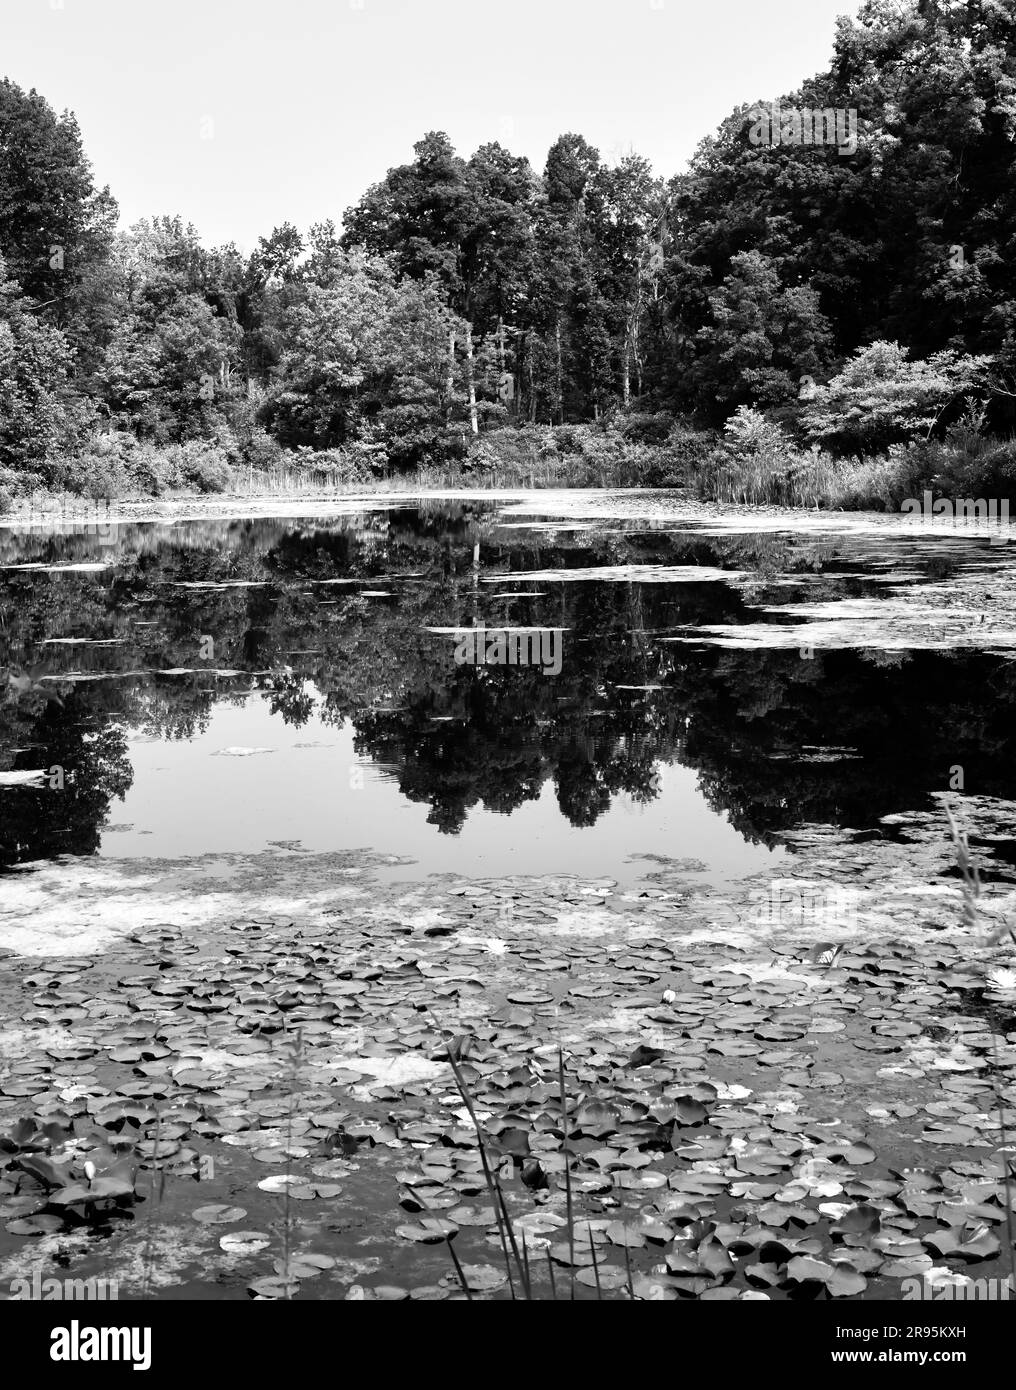 arbres avec miroir de réflexion dans l'eau calme de l'étang Banque D'Images